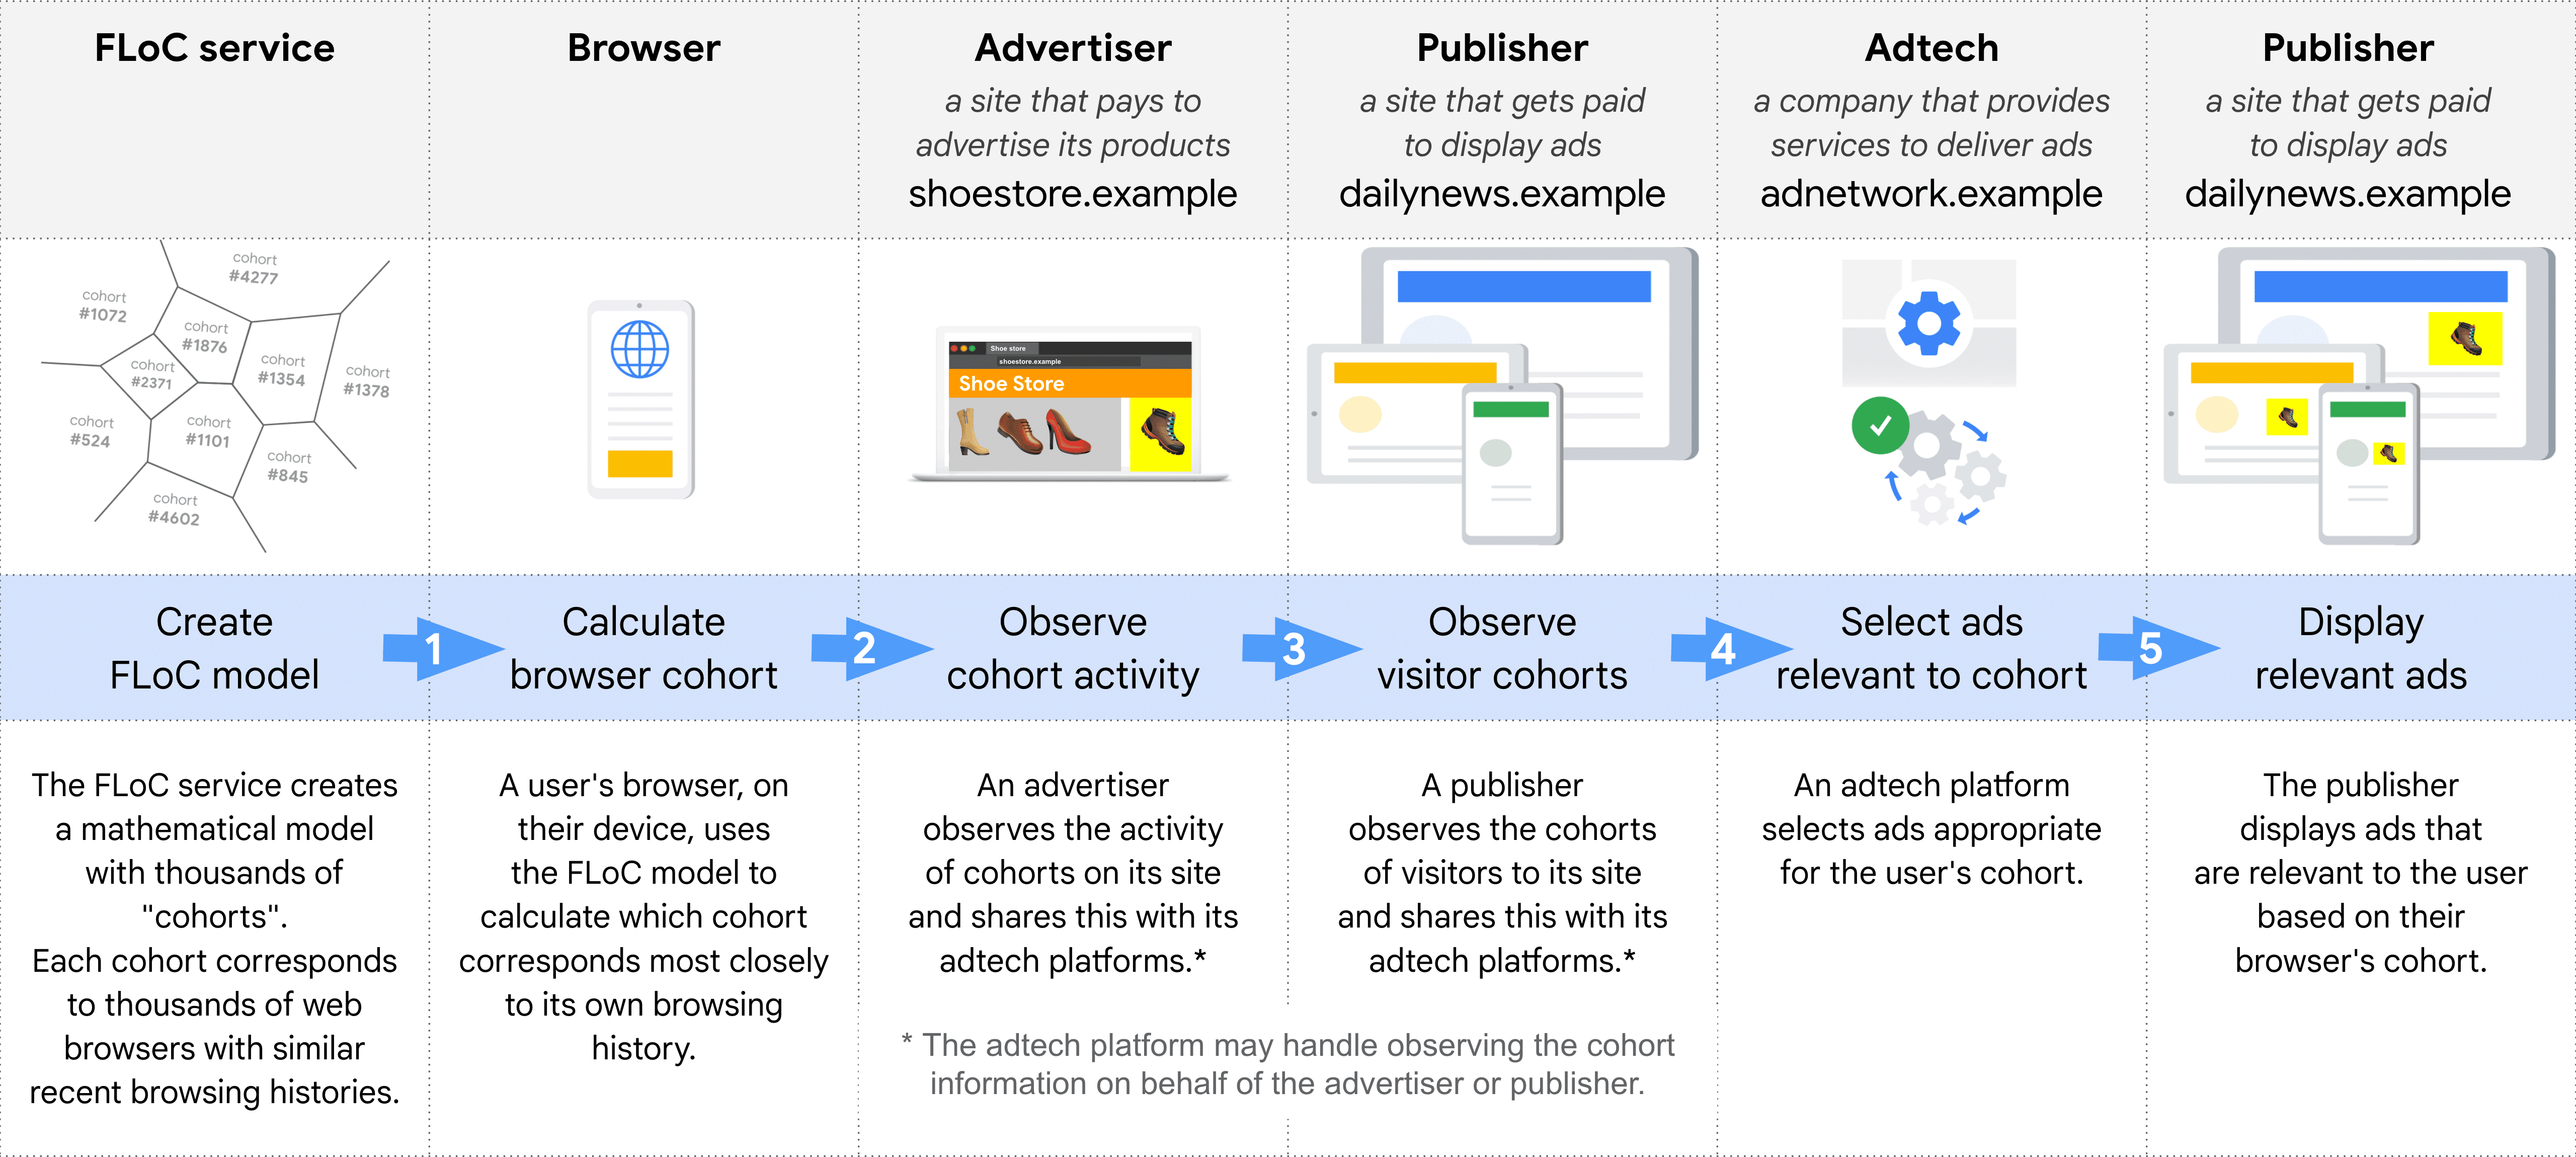 這張圖表顯示逐步說明，使用 FLoC 選擇及放送廣告時，所扮演的不同角色：FLoC 服務、瀏覽器、廣告主、發布商 (觀察同類群組)、Adtech、發布商 (顯示廣告)